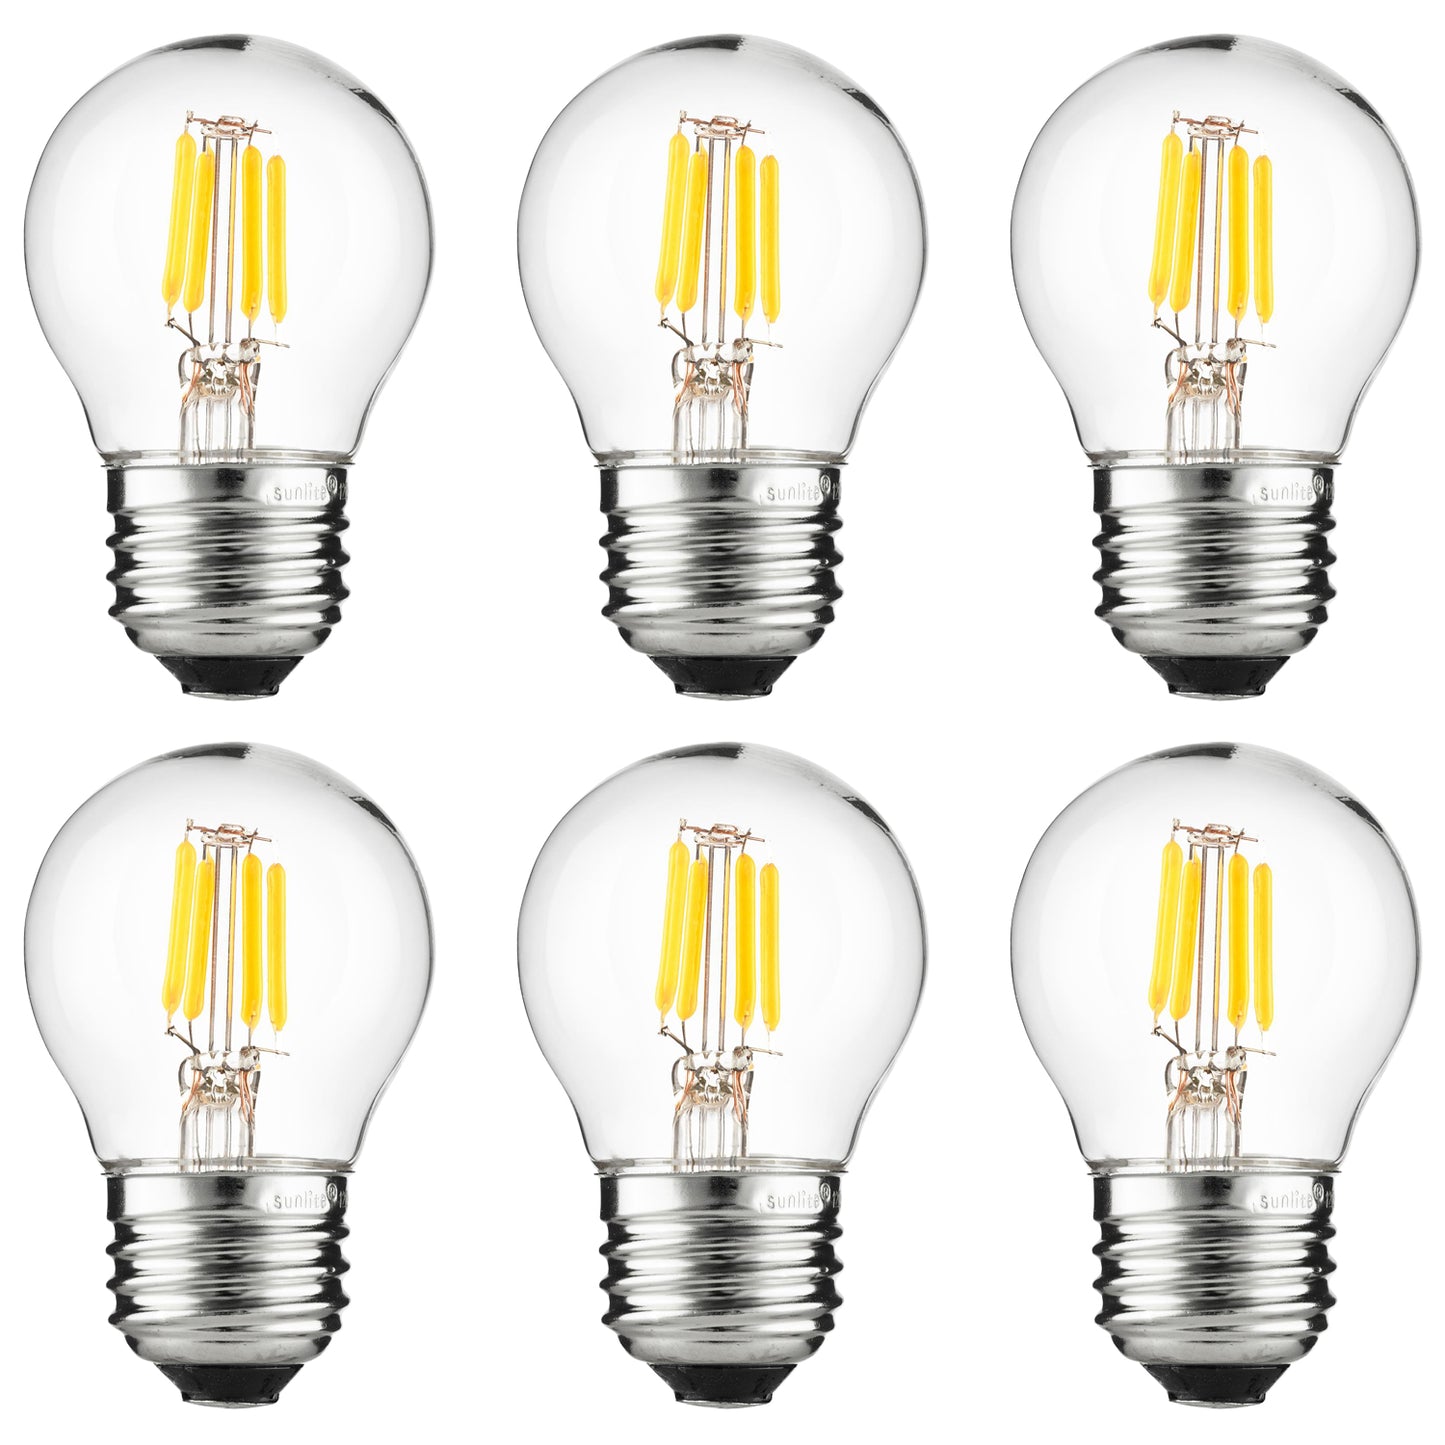 Sunlite LED Vintage G16 Globe 3W (25W Equivalent) Light Bulb Medium (E26) Base, Amber Light